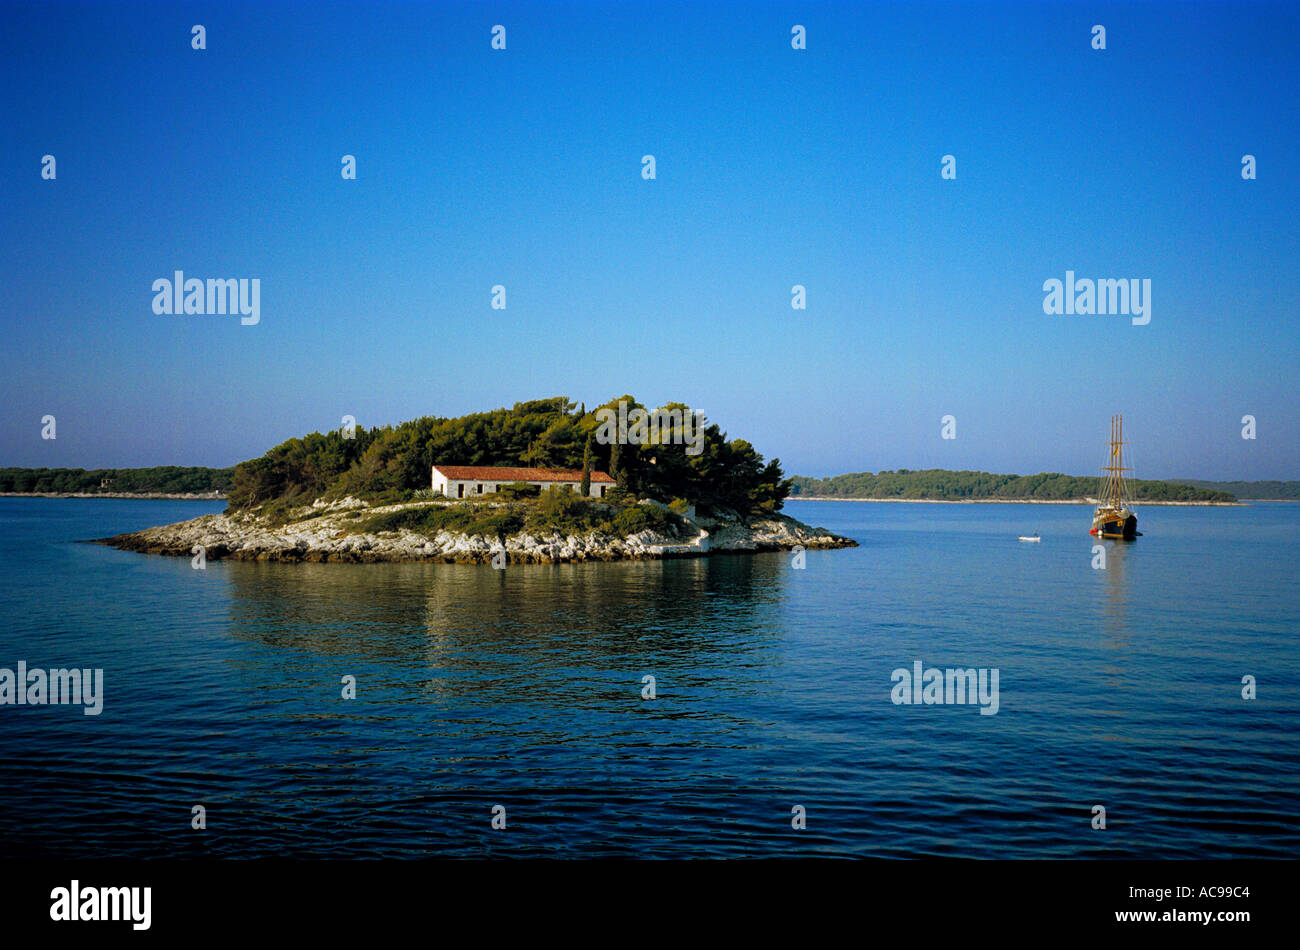 Ein Schoner liegt die kleine Insel Jerolim in der Nähe von Hvar aus der dalmatinischen Küste von Kroatien, in die lebendige Blau von einem ruhigen Morgen Stockfoto